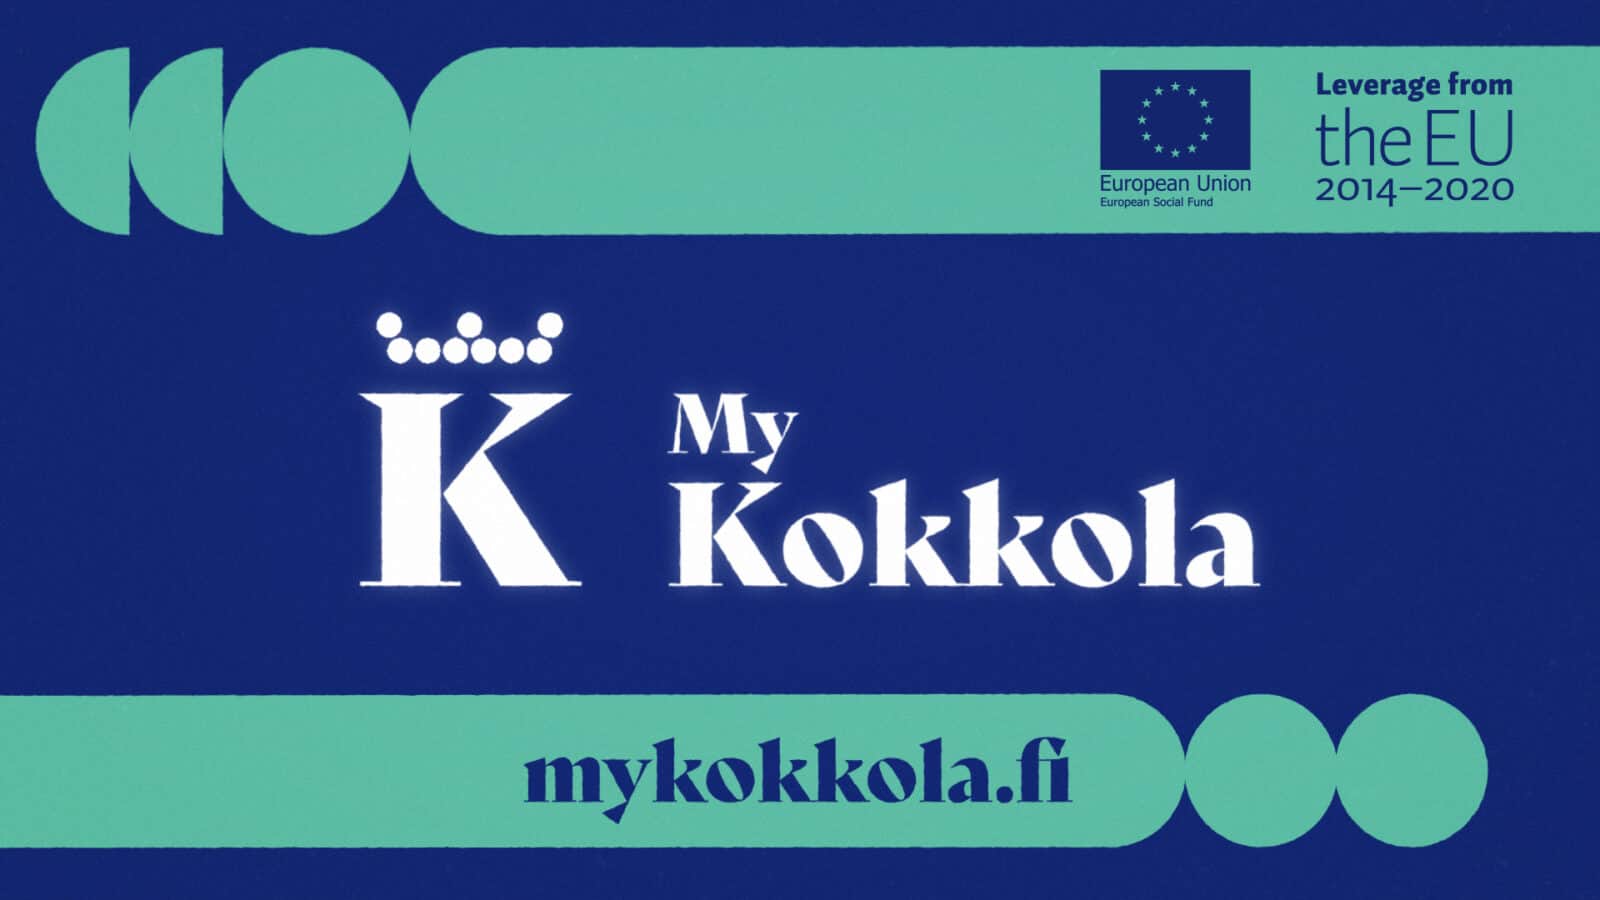 MyKokkola logo and website mykokkola.fi. Leverage from the EU.